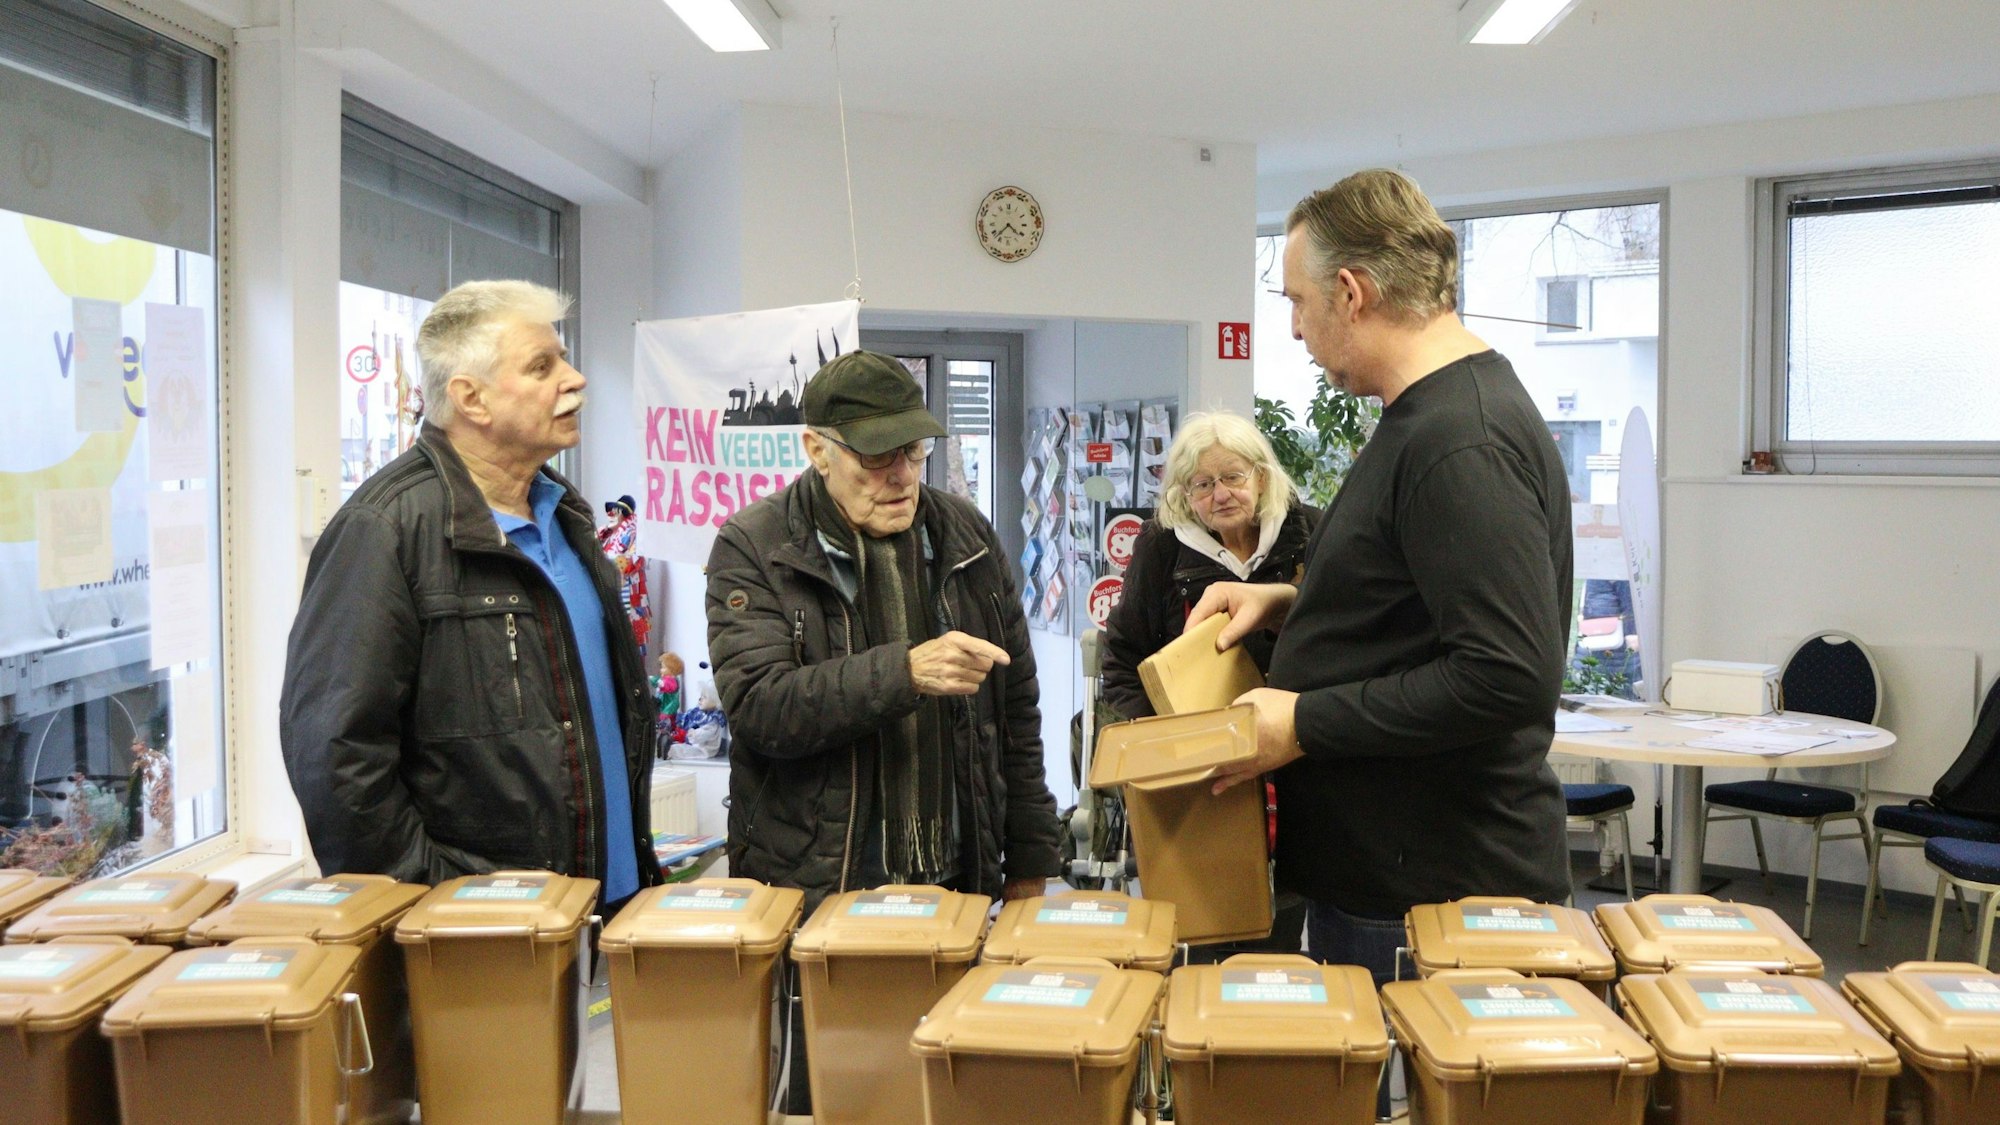 Bereits vor Beginn der Verteilaktion kamen viele Buchforster, um sich zu informieren und ihre Haushaltsbehälter für Biomüll zu empfangen. Foto: Uwe Schäfer